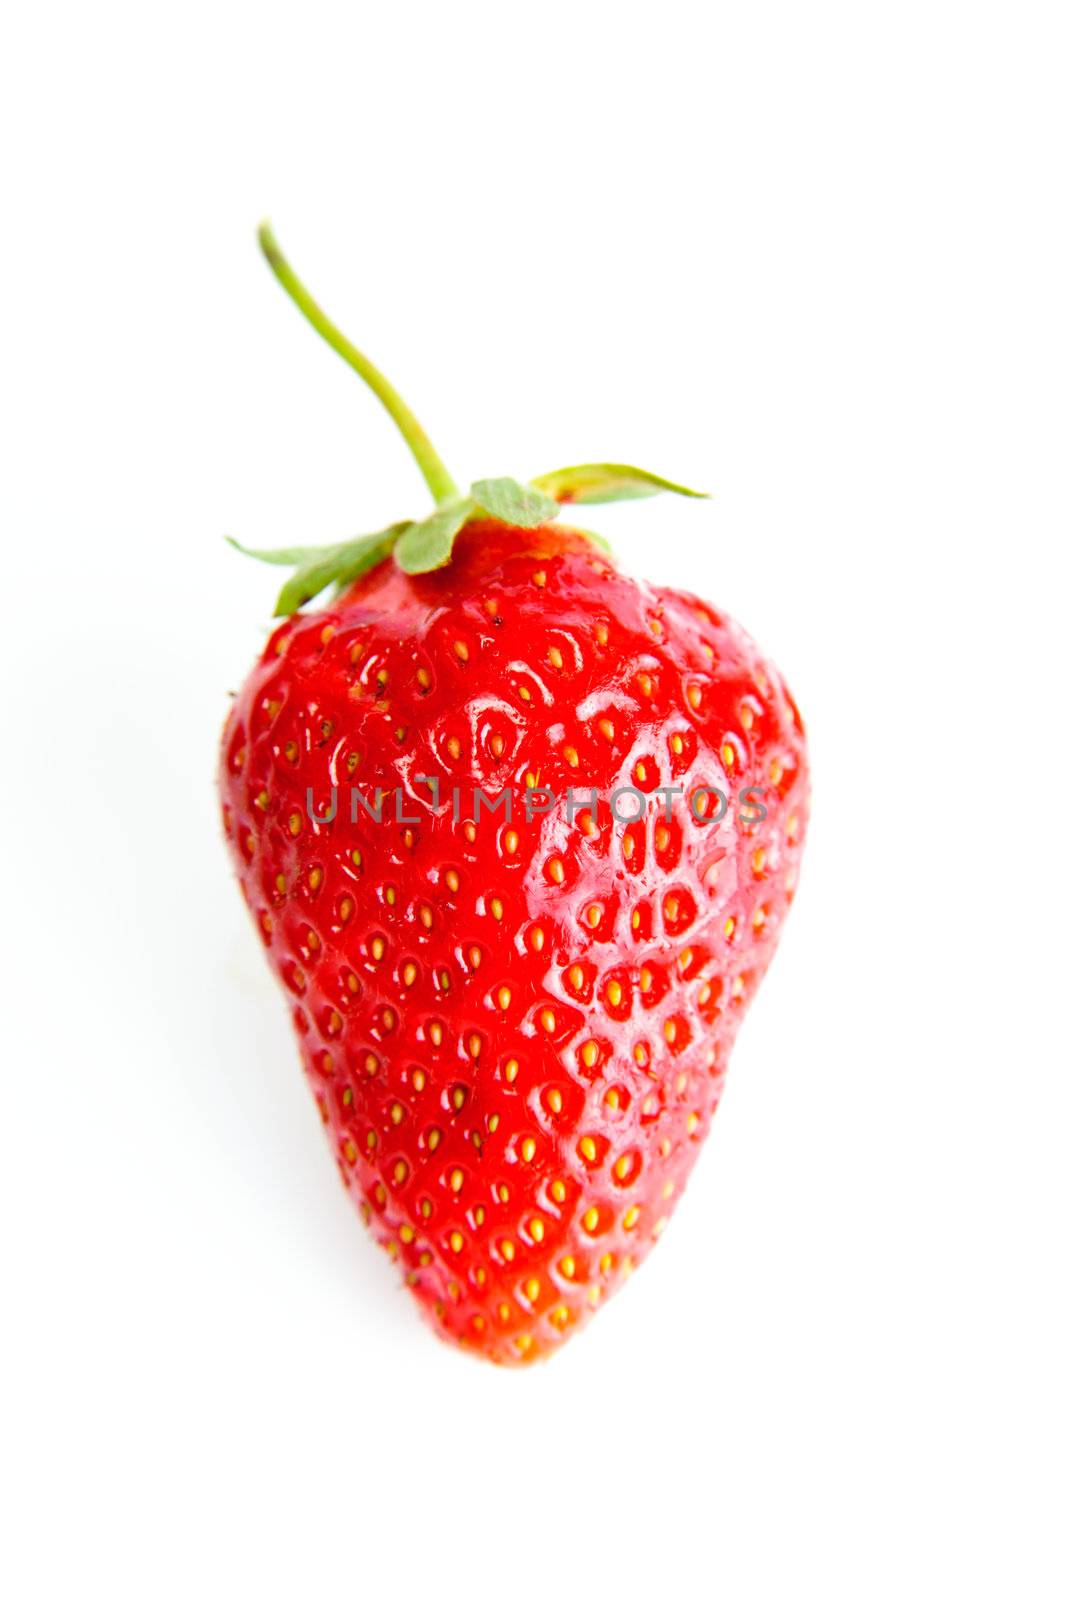 Strawberry by velkol